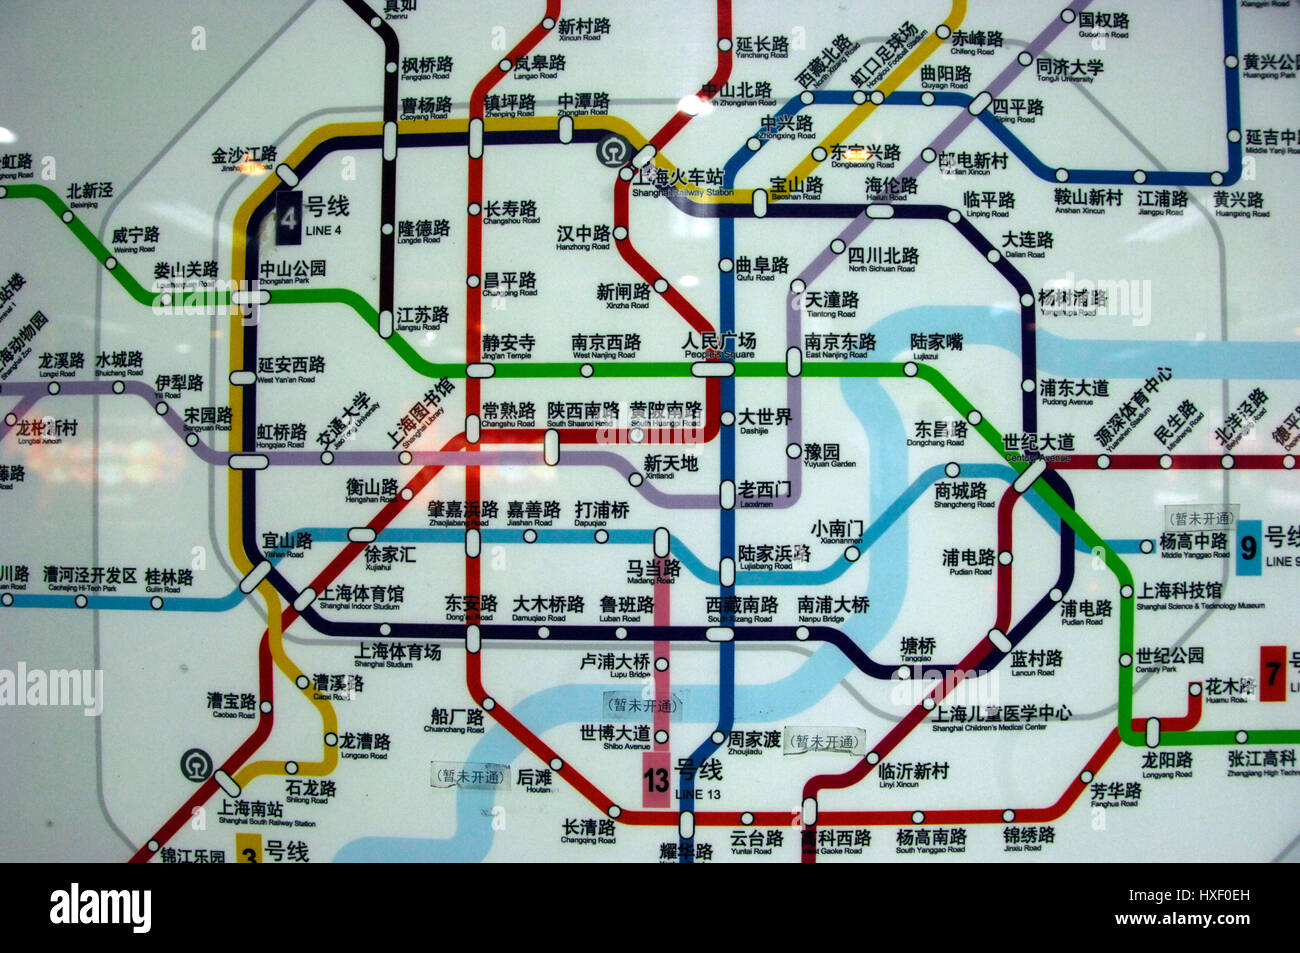 Metro Map in Shanghai, China Stock Photo Alamy